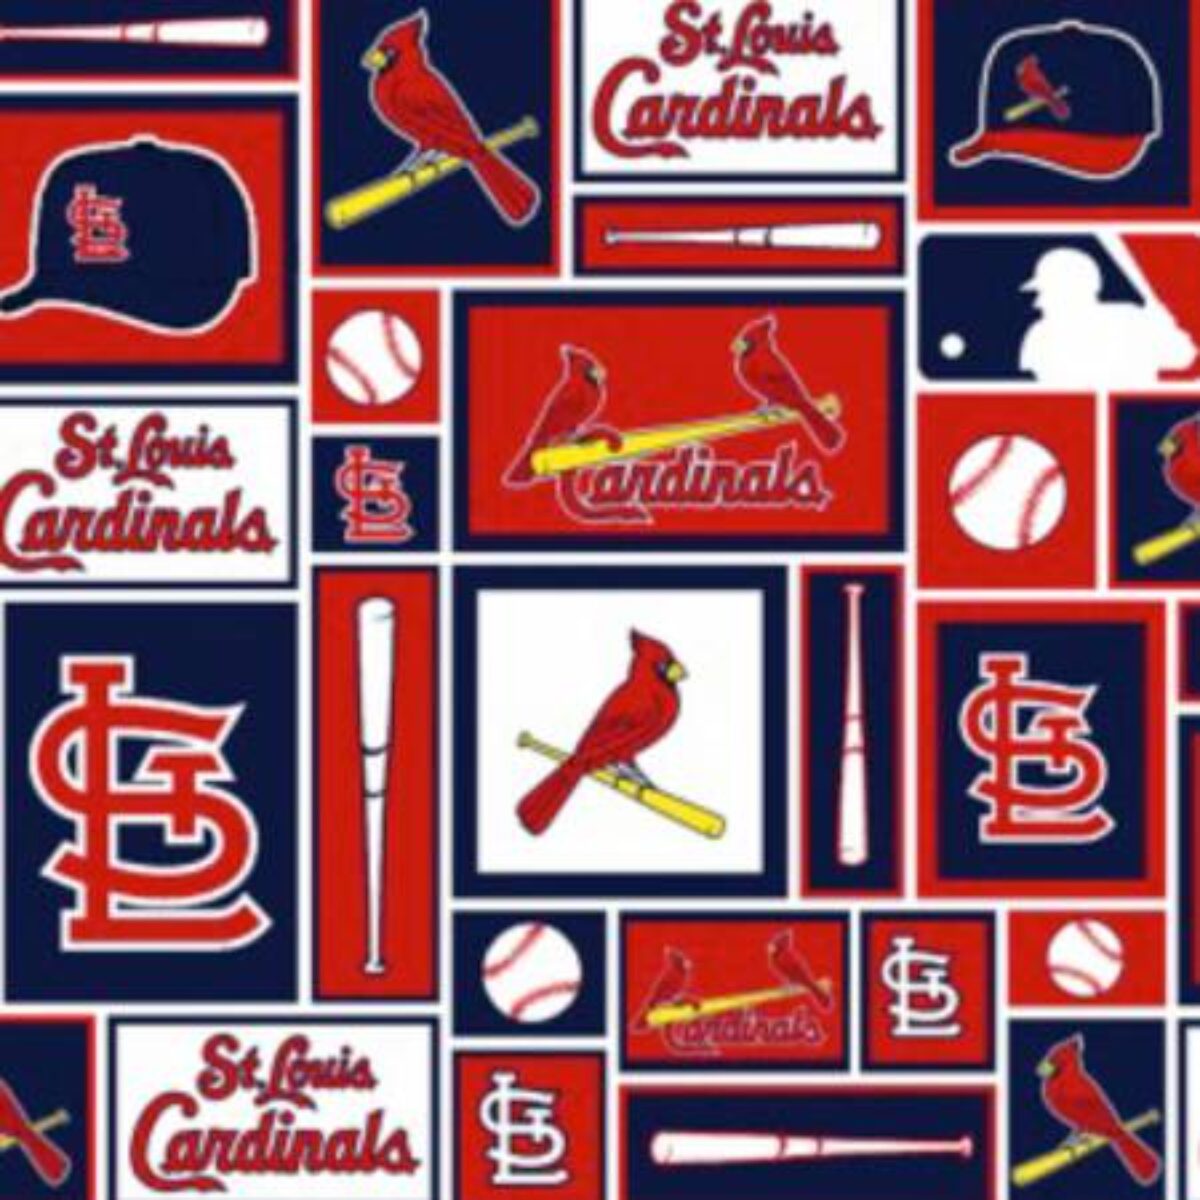 St Louis Cardinals Fabric - 118 Fabrics & More